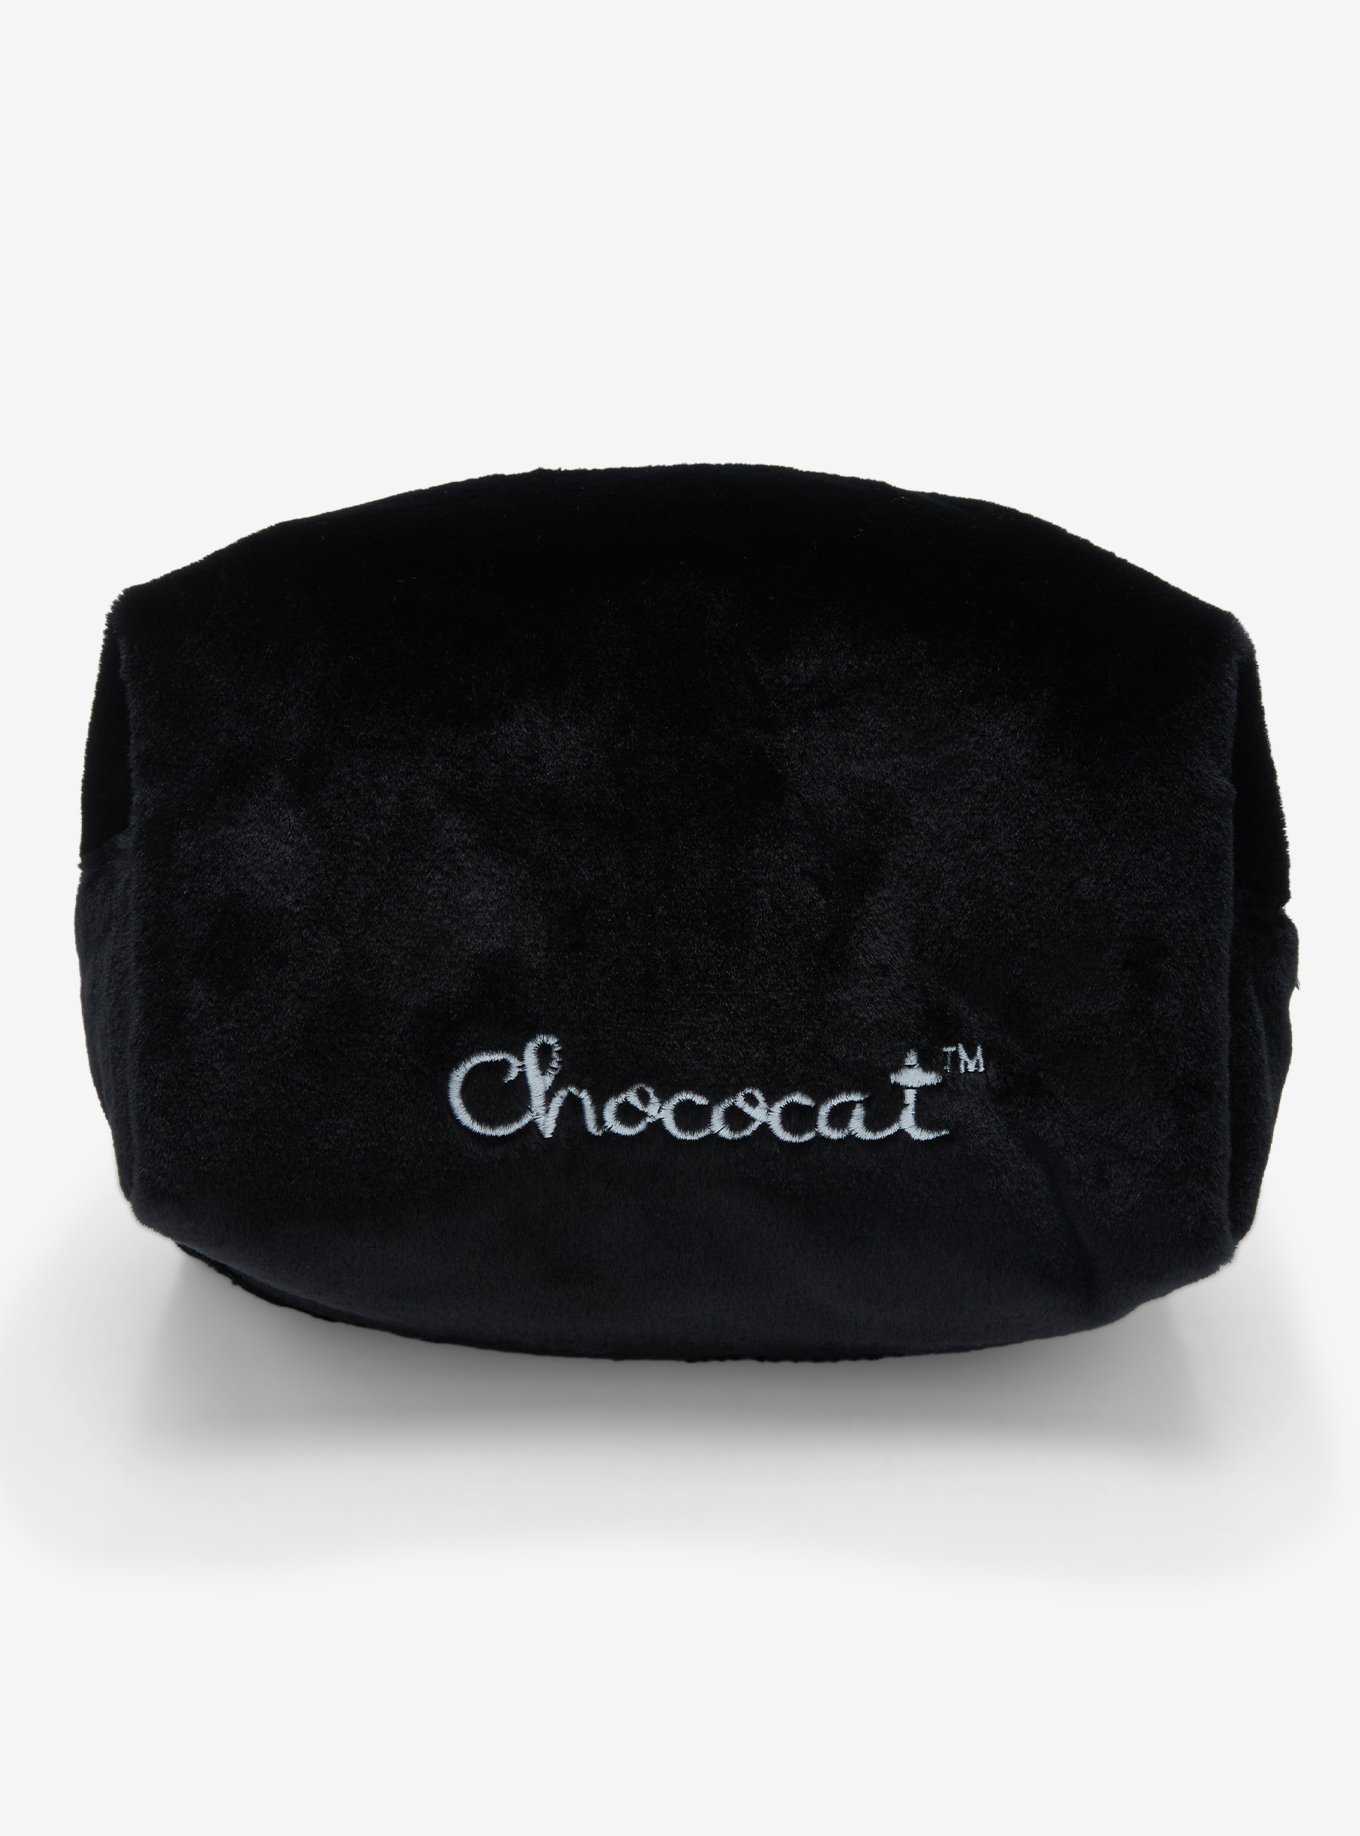 Chococat Figural Makeup Bag, , hi-res